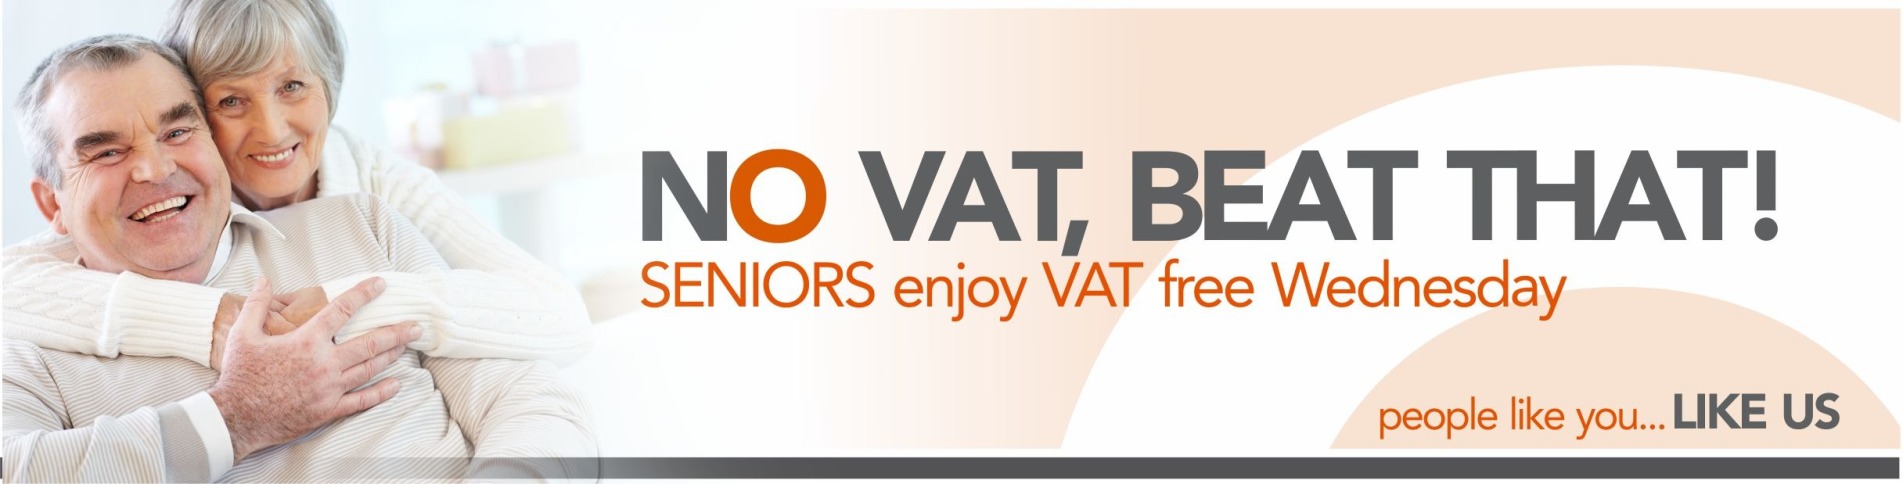 VAT Free Wednesdays